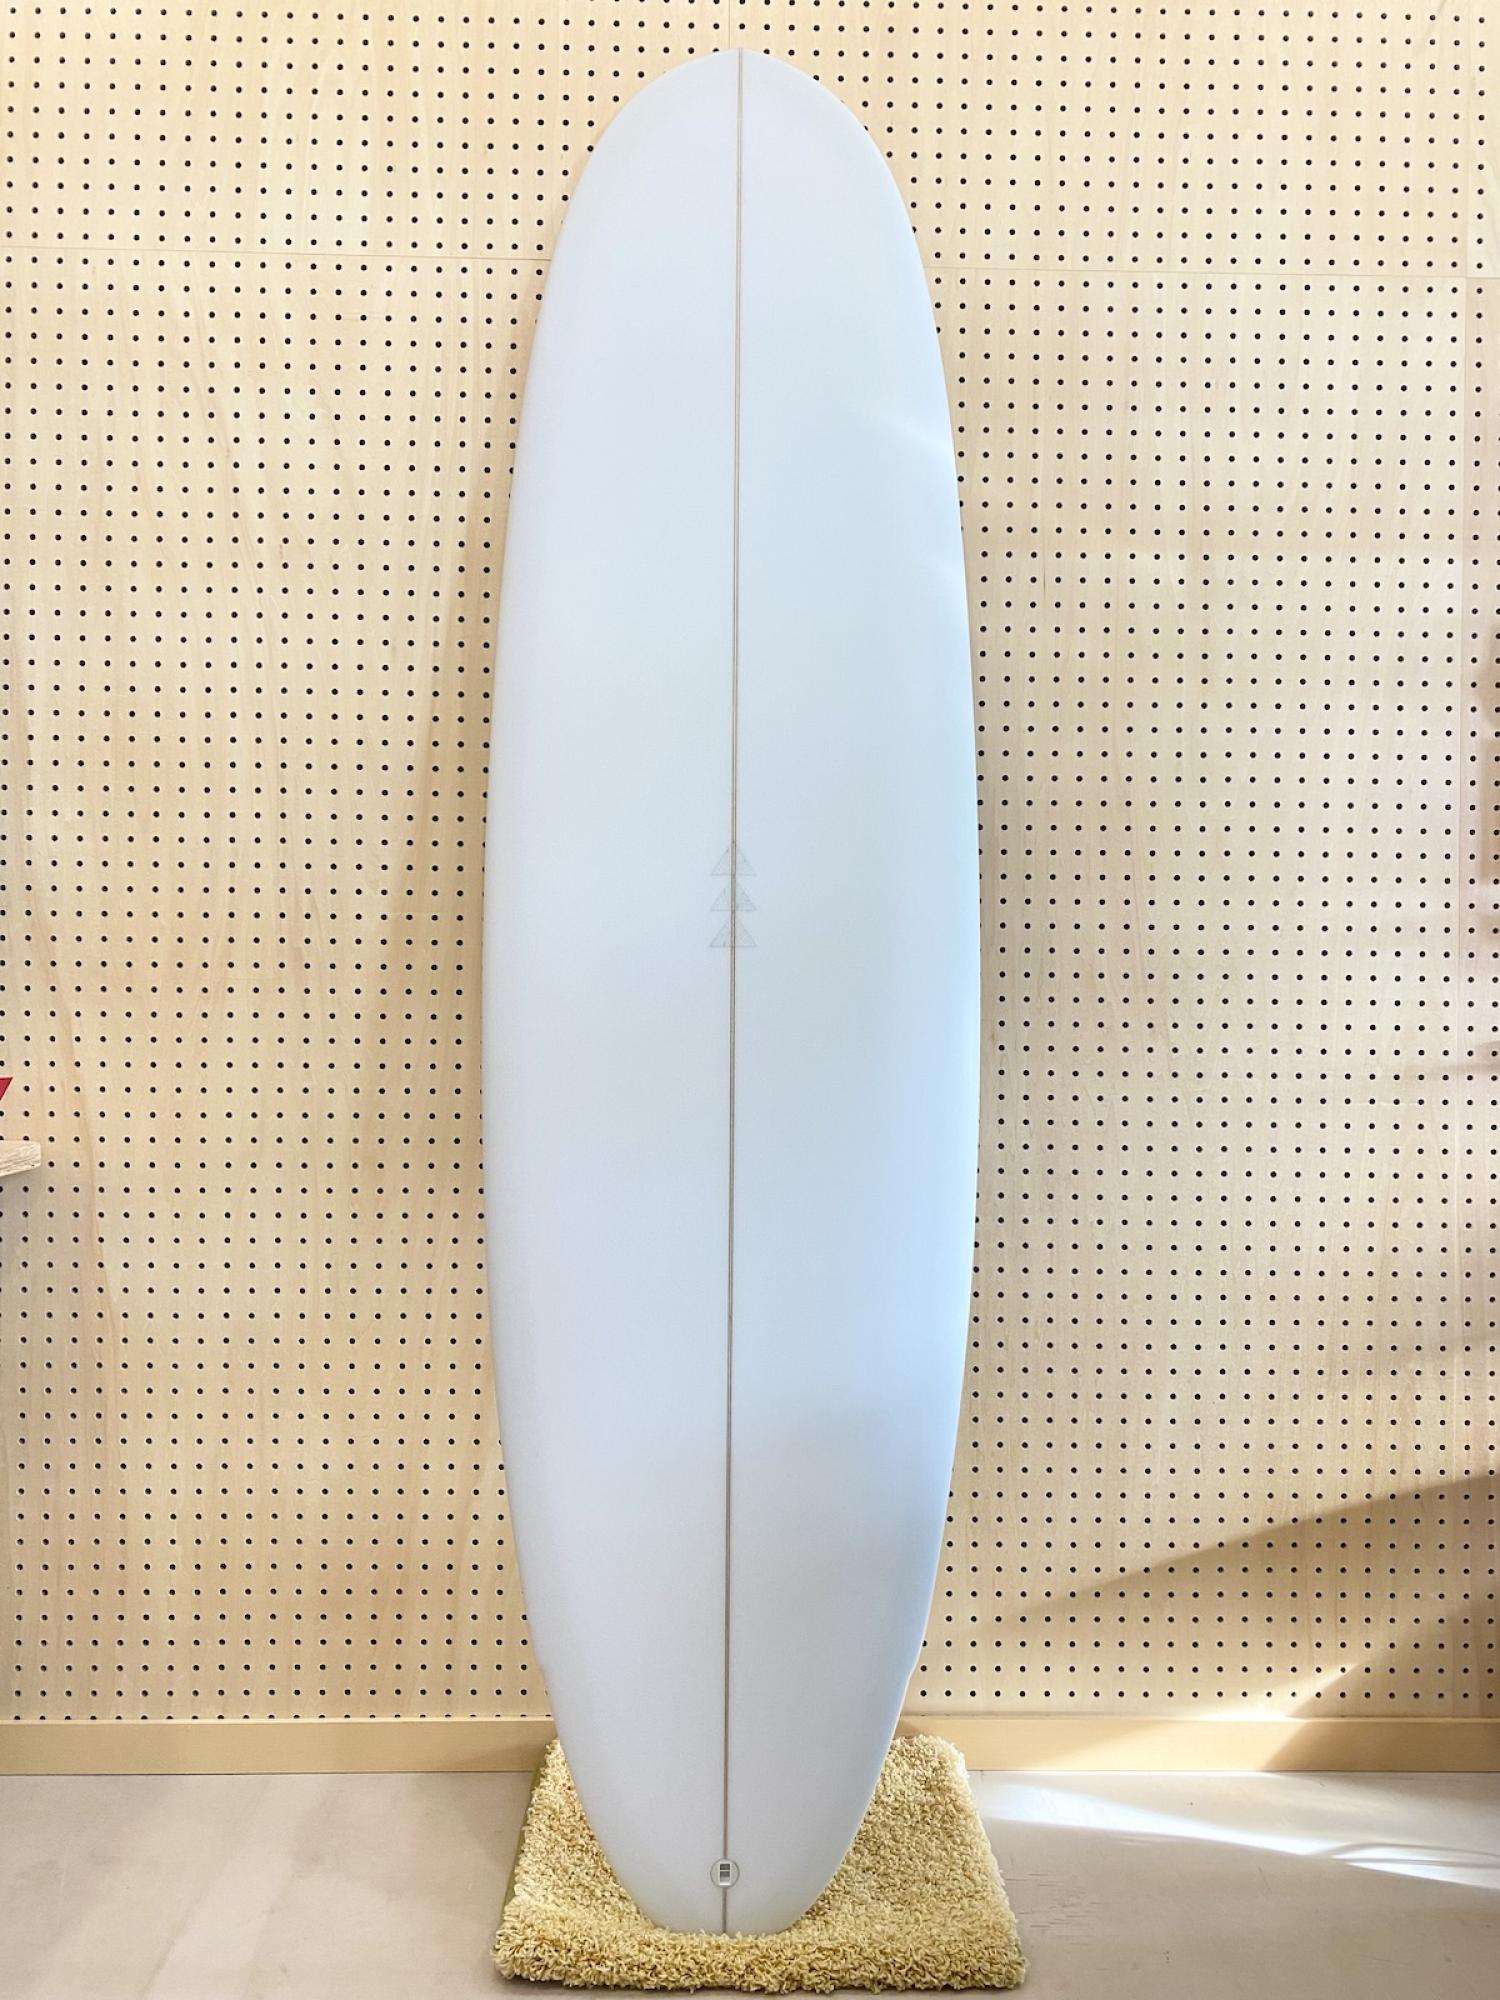 FLOYD PEPPER Longo 6.10 FURROW SURF CRAFT